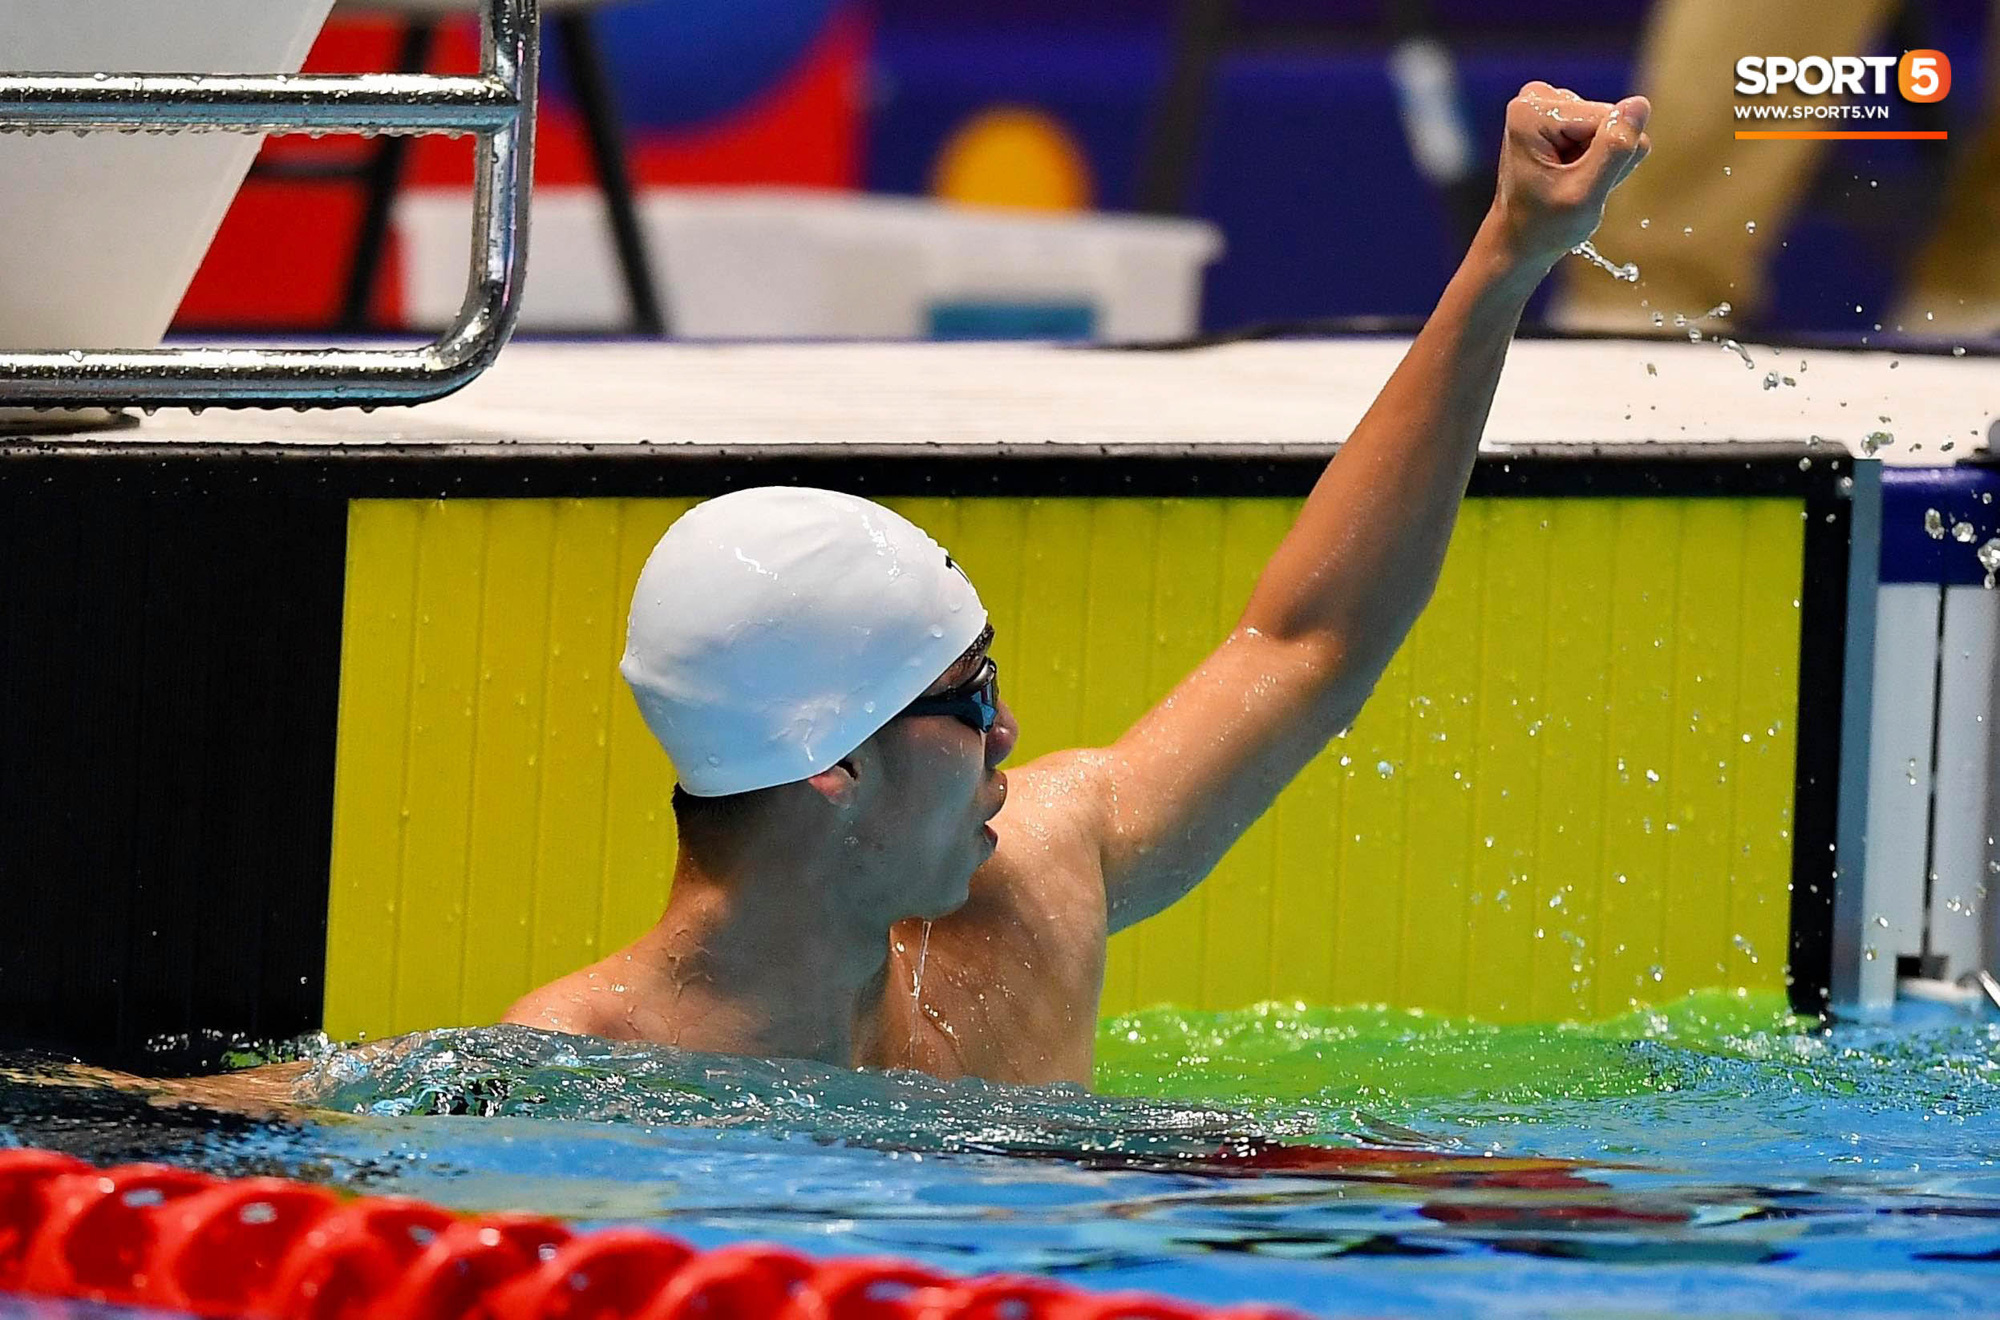 Nguyễn Huy Hoàng - Kình ngư sinh năm 2000 phá kỉ lục SEA Games và mở hàng huy chương vàng cho đội bơi Việt Nam - Ảnh 3.